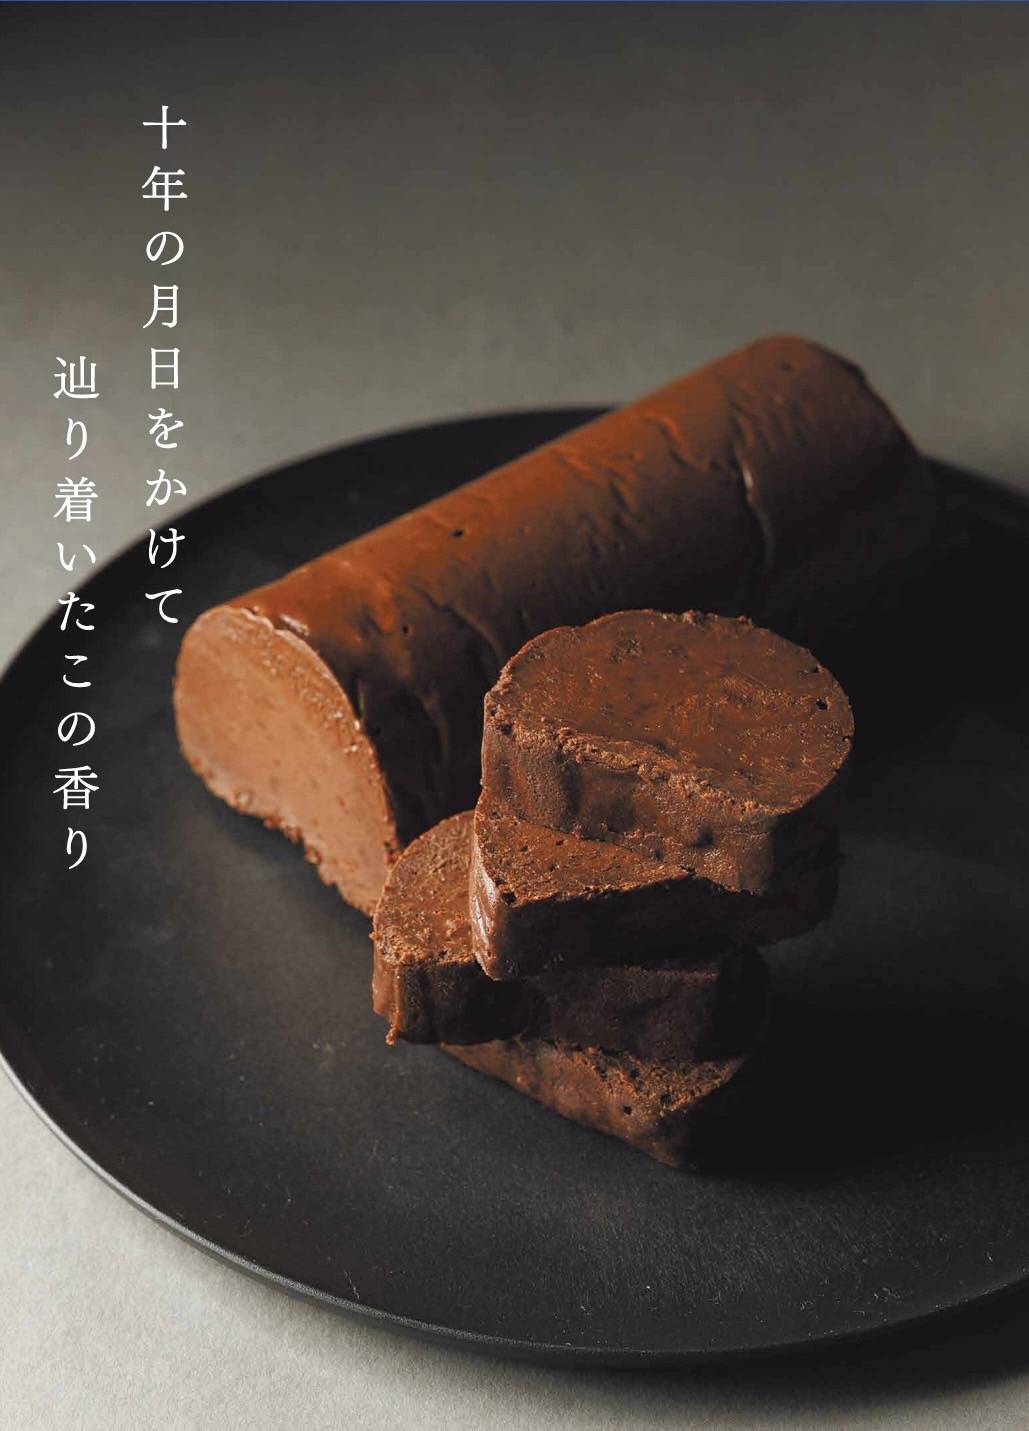 舶来亭のチョコレートケーキ【ふるさと納税返礼品✨】